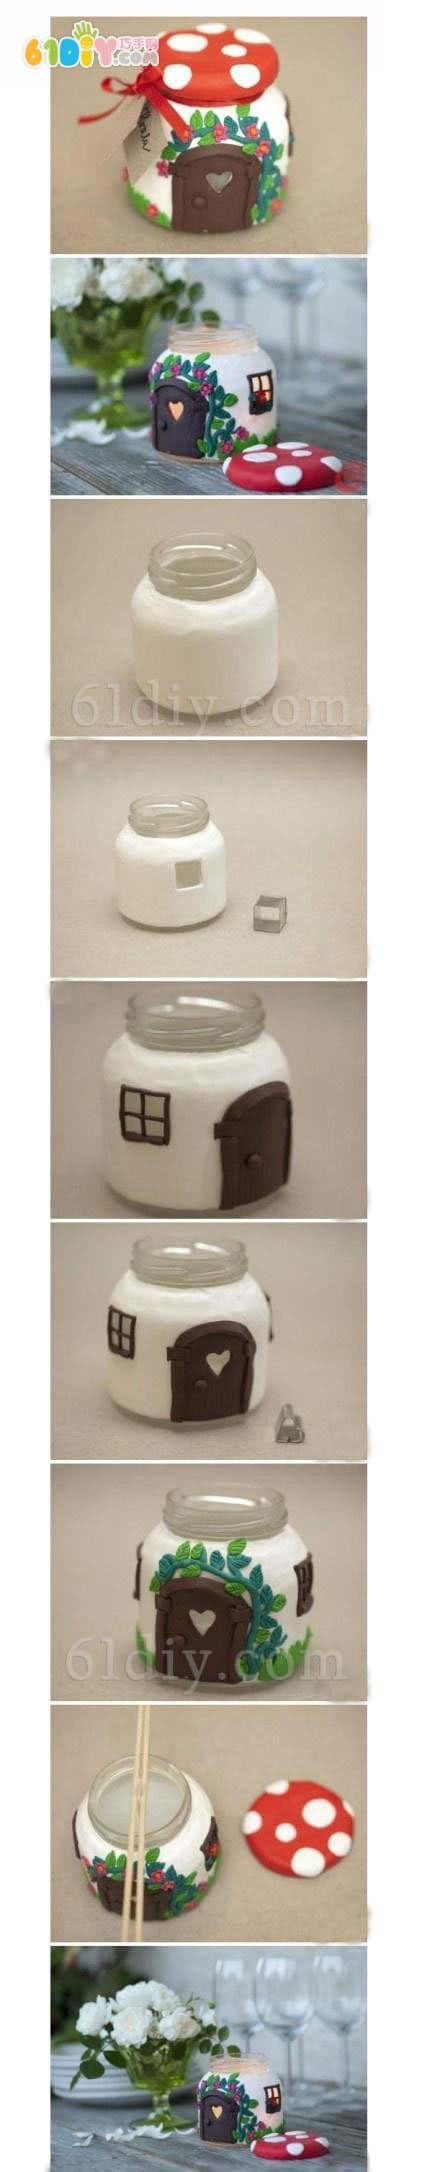 瓶子手工制作卡通蘑菇小屋